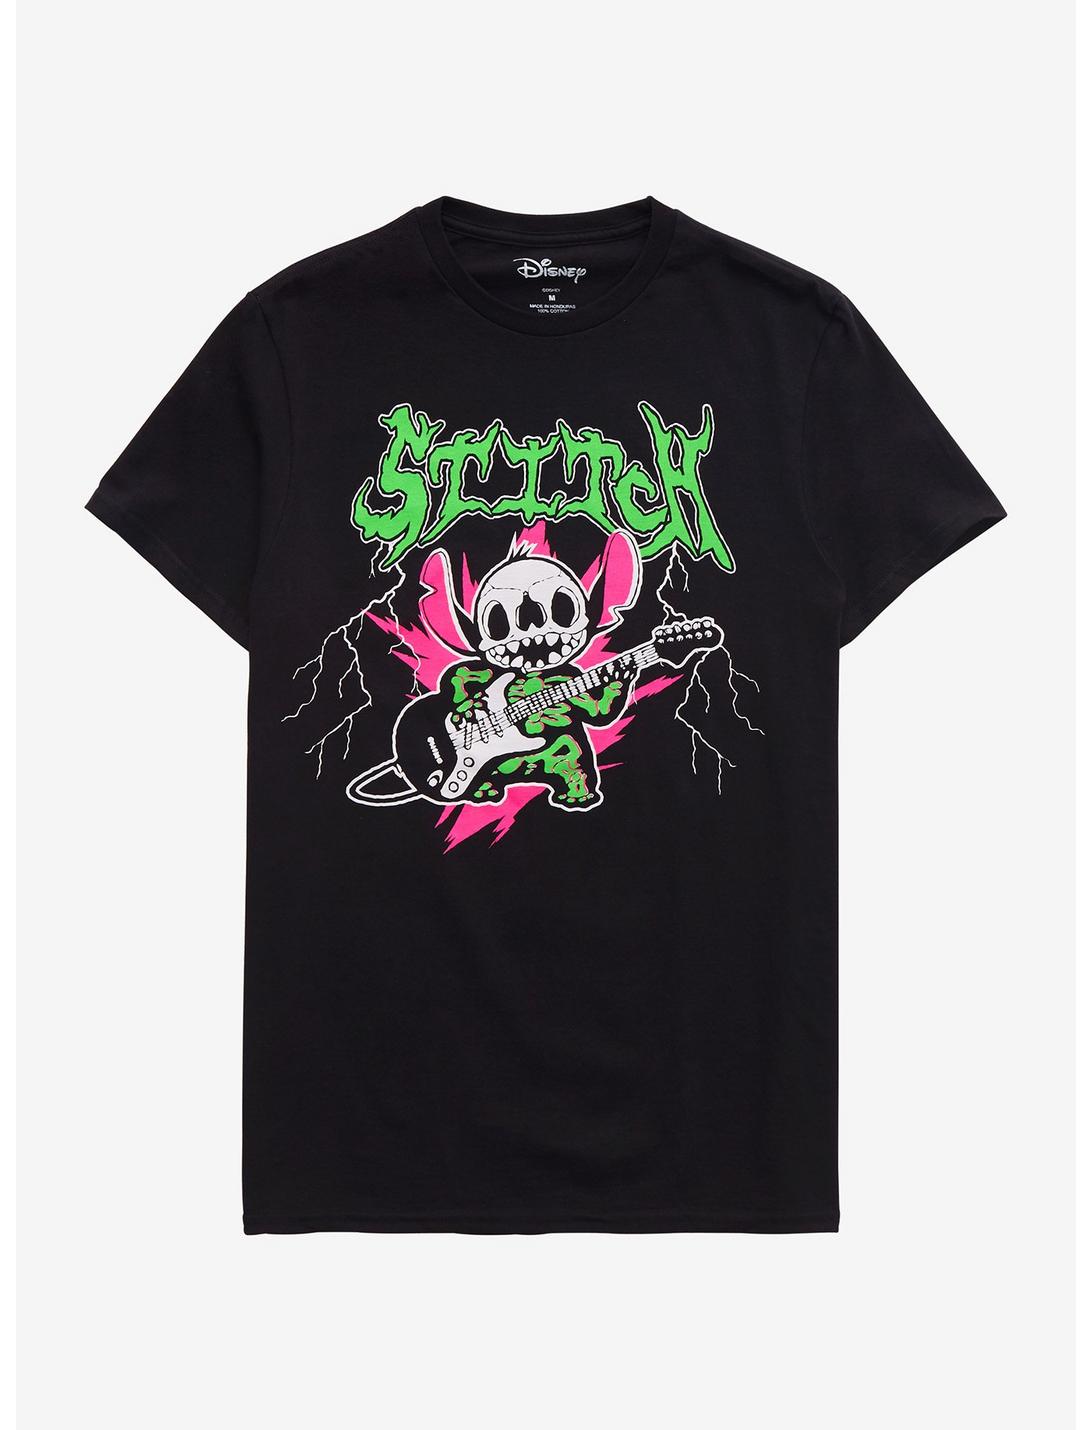 Disney Stitch Heavy Metal Guitar T-Shirt, BLACK, hi-res